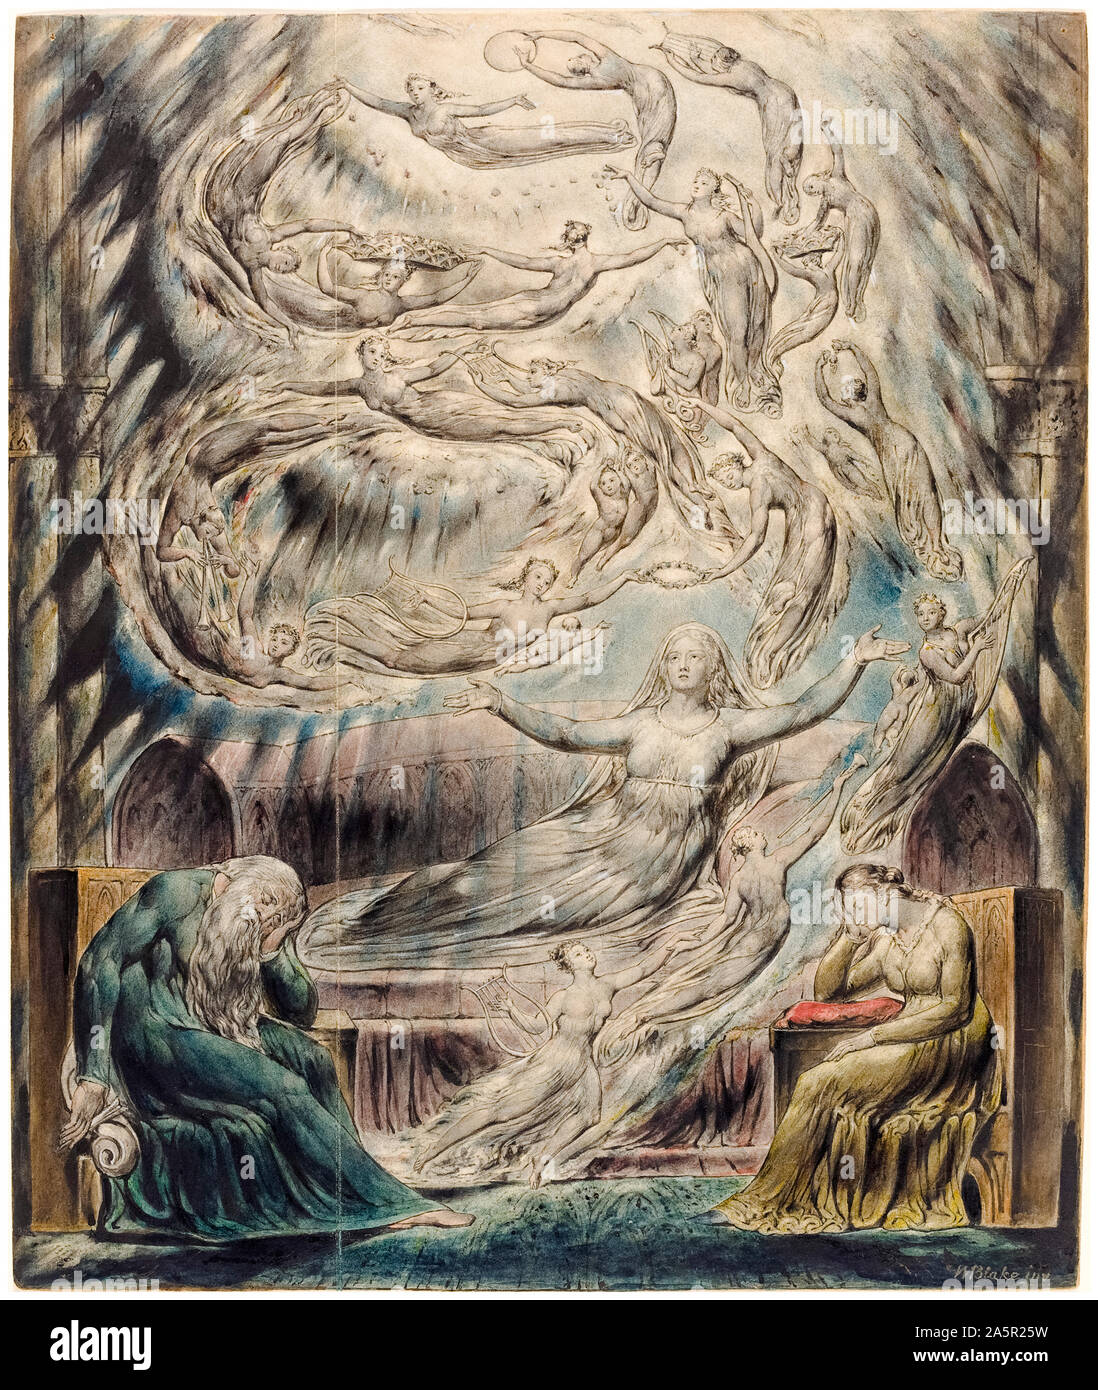 William Blake, Queen Katherine's Dream, aquarelle sur stylo et encre, illustration, vers 1825 Banque D'Images